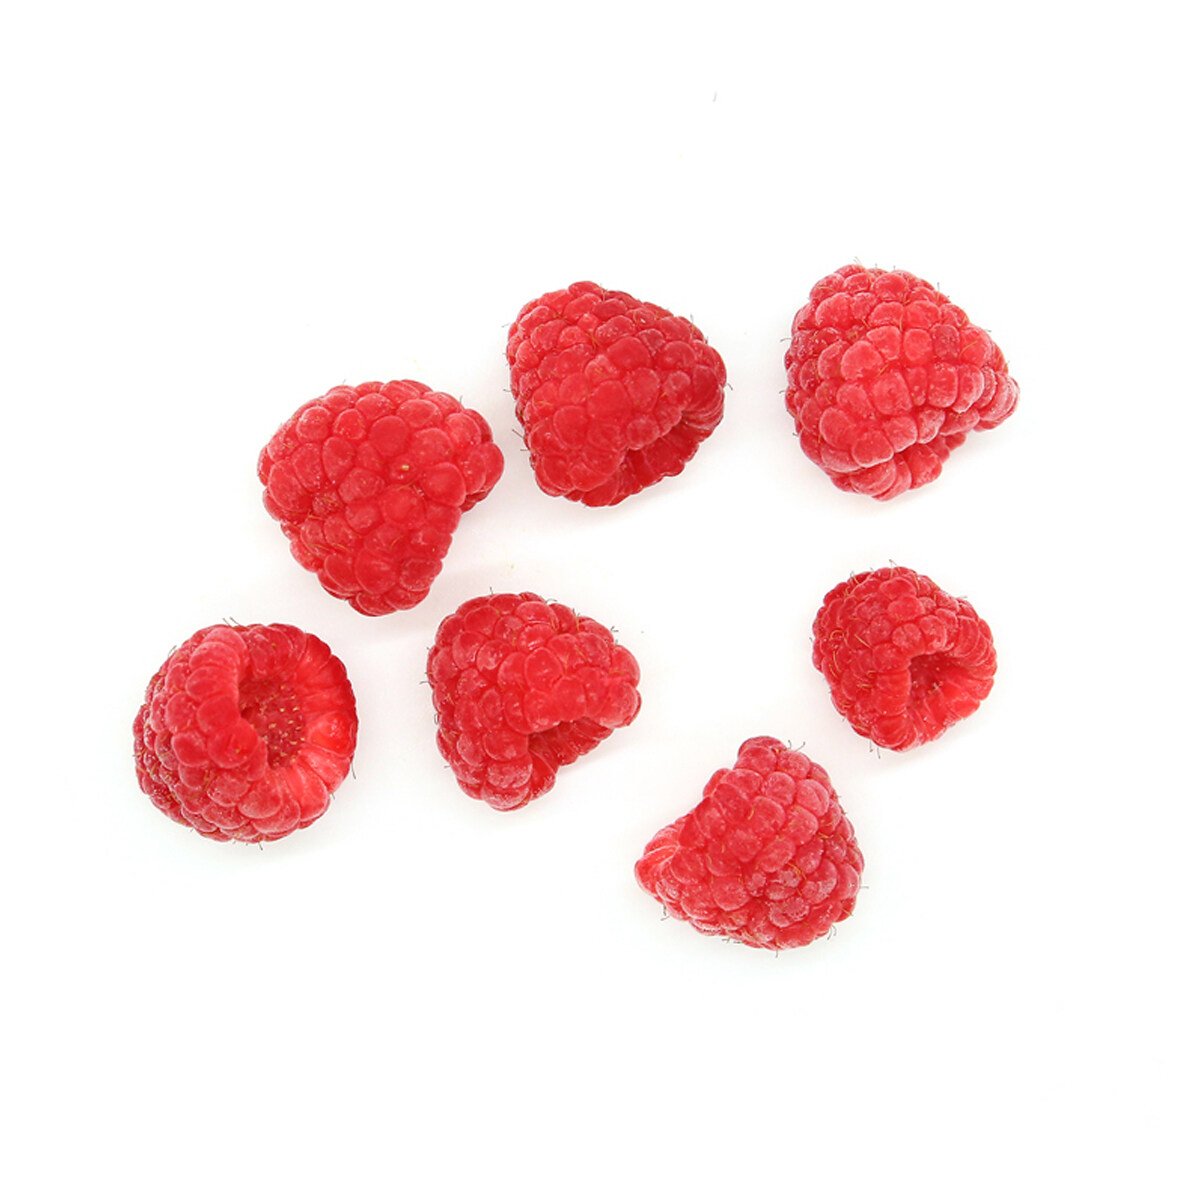 التوت الفاكهة المجمدة بالجملة ، توت العليق المخصص العضوي المجمدة ، مصنع التوت المتجمد ، مصنع لوب التوت المجمد ، Frozen Foods IQF Raspberry